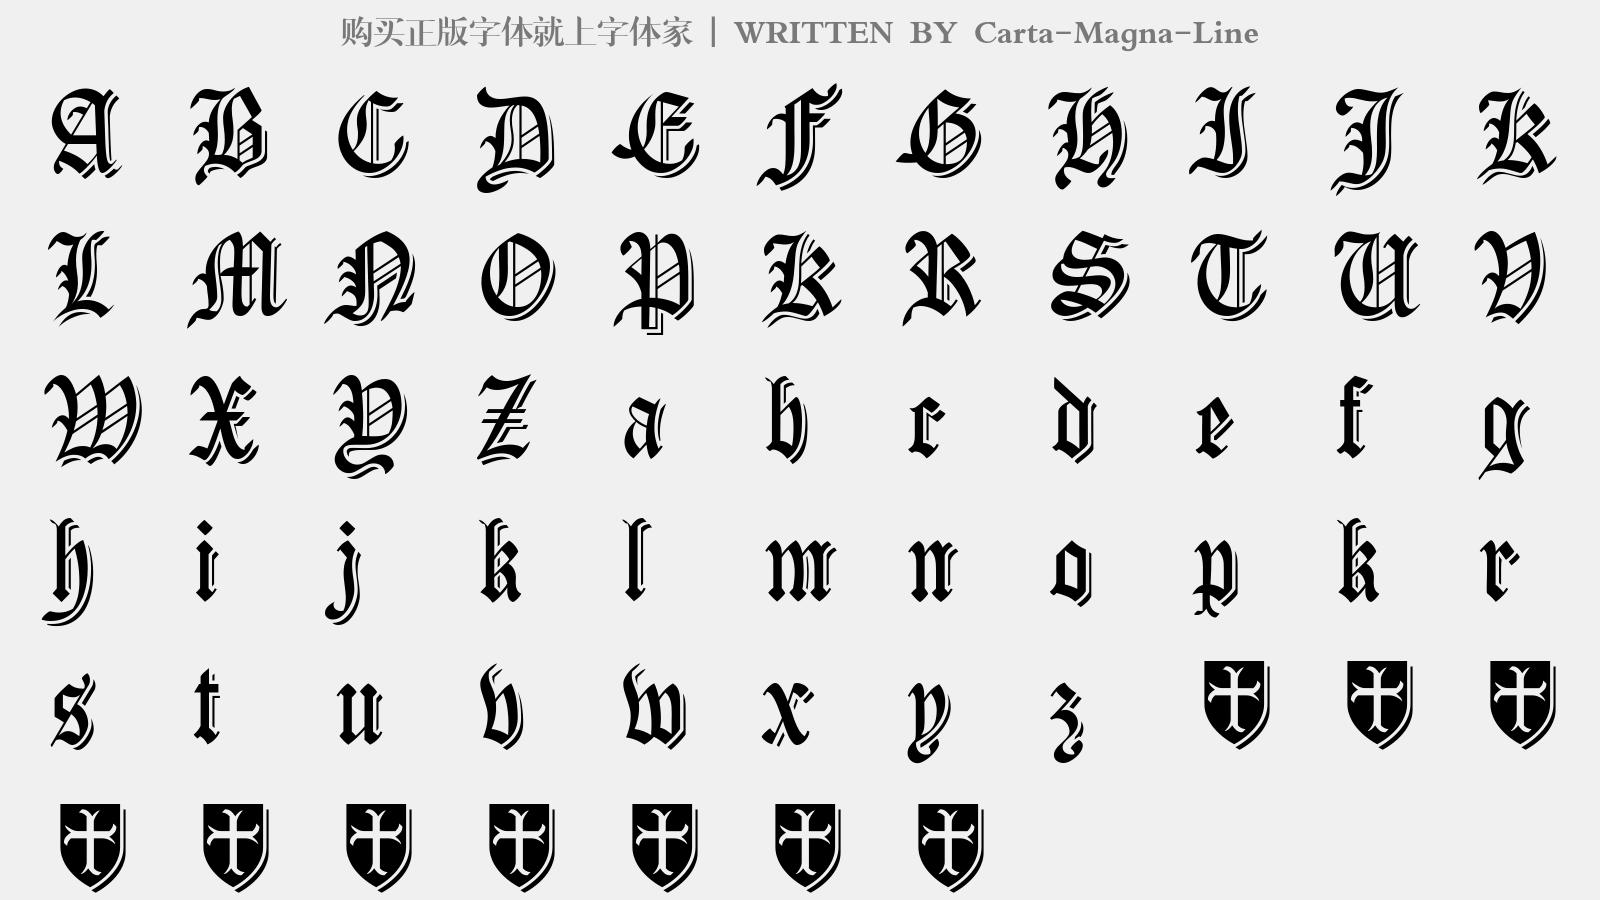 Carta-Magna-Line - 大写字母/小写字母/数字